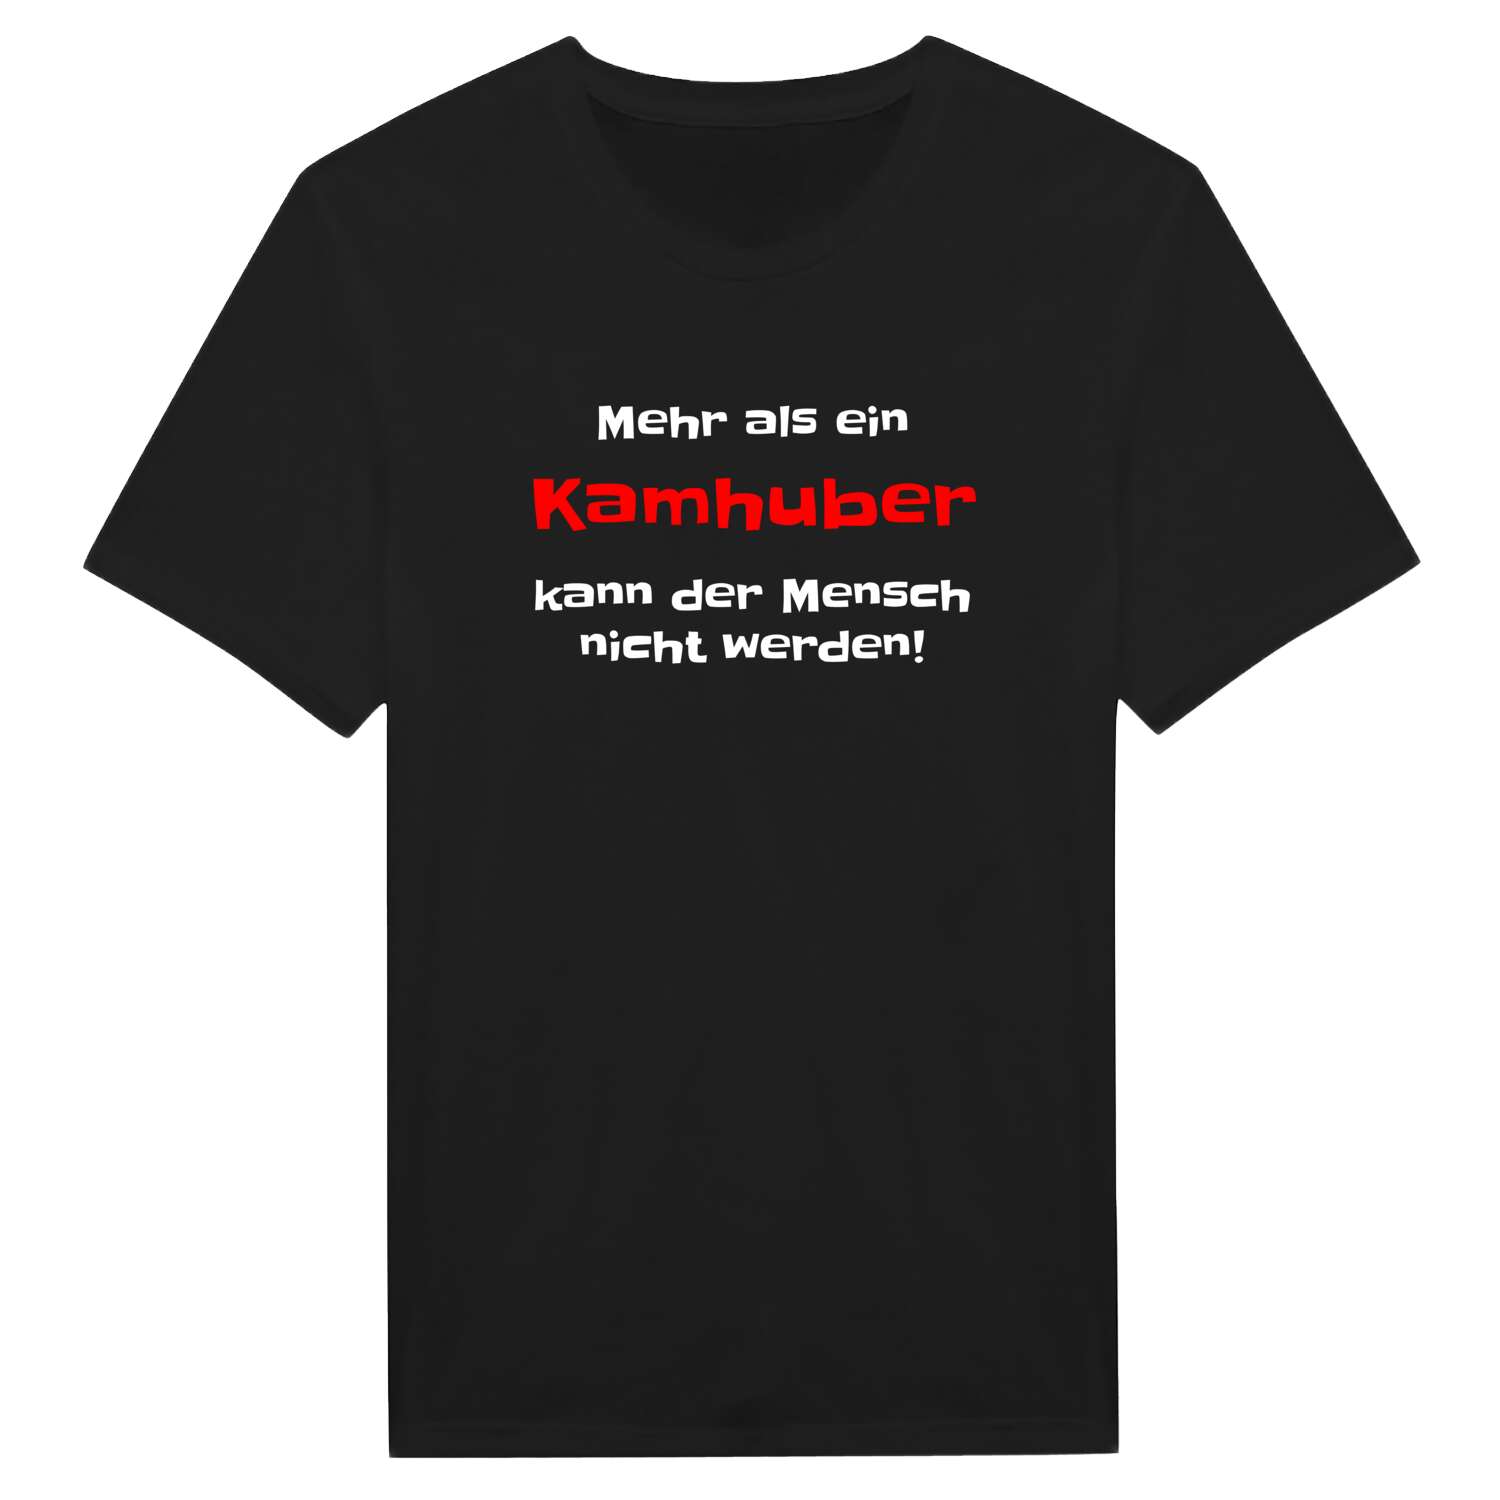 Kamhub T-Shirt »Mehr als ein«